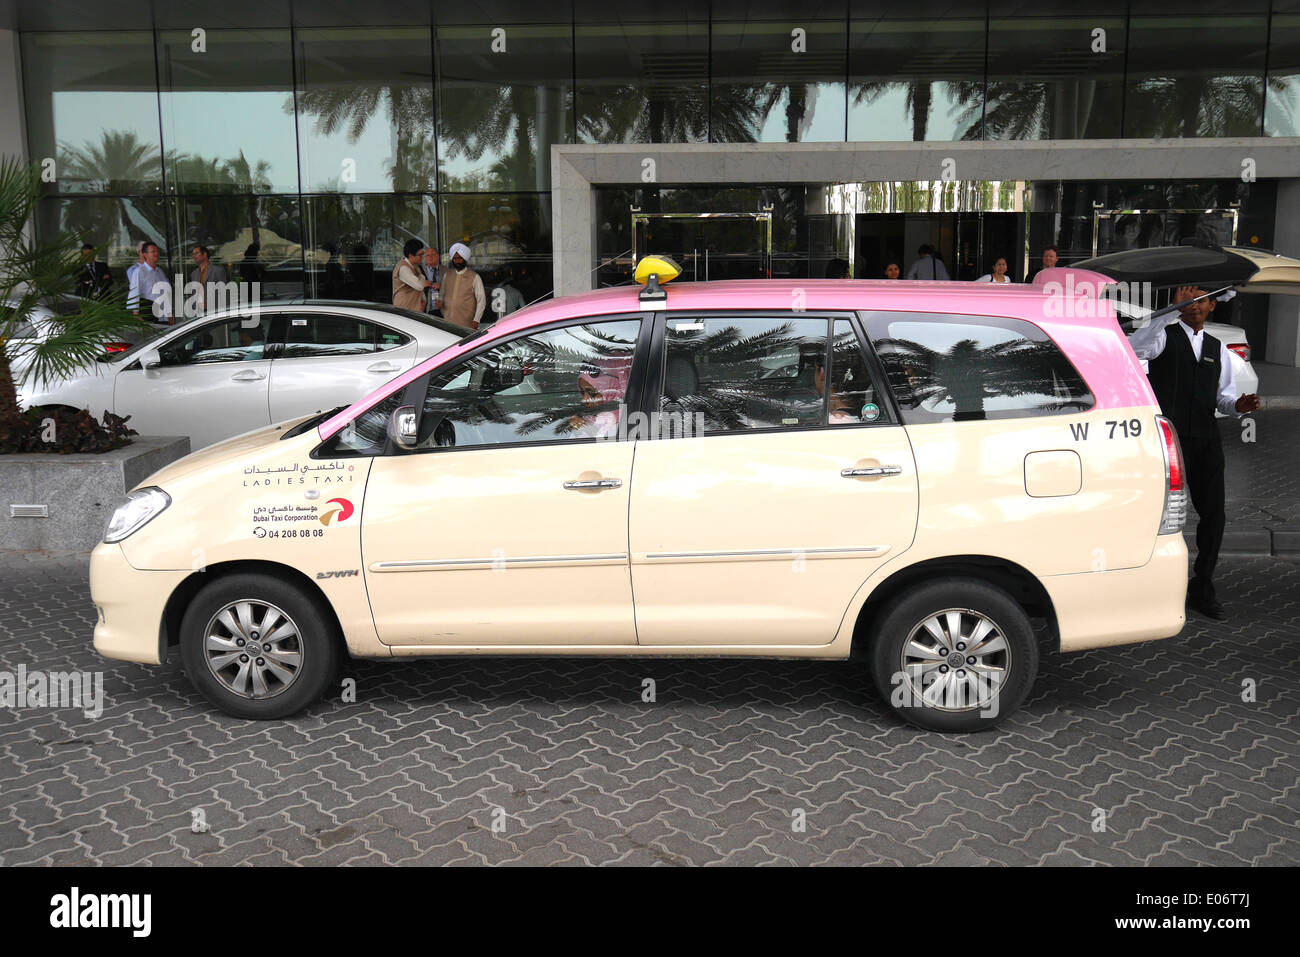 Dubai Ladies taxi outside a hotel, Dubai, United Arab Emirates Stock Photo